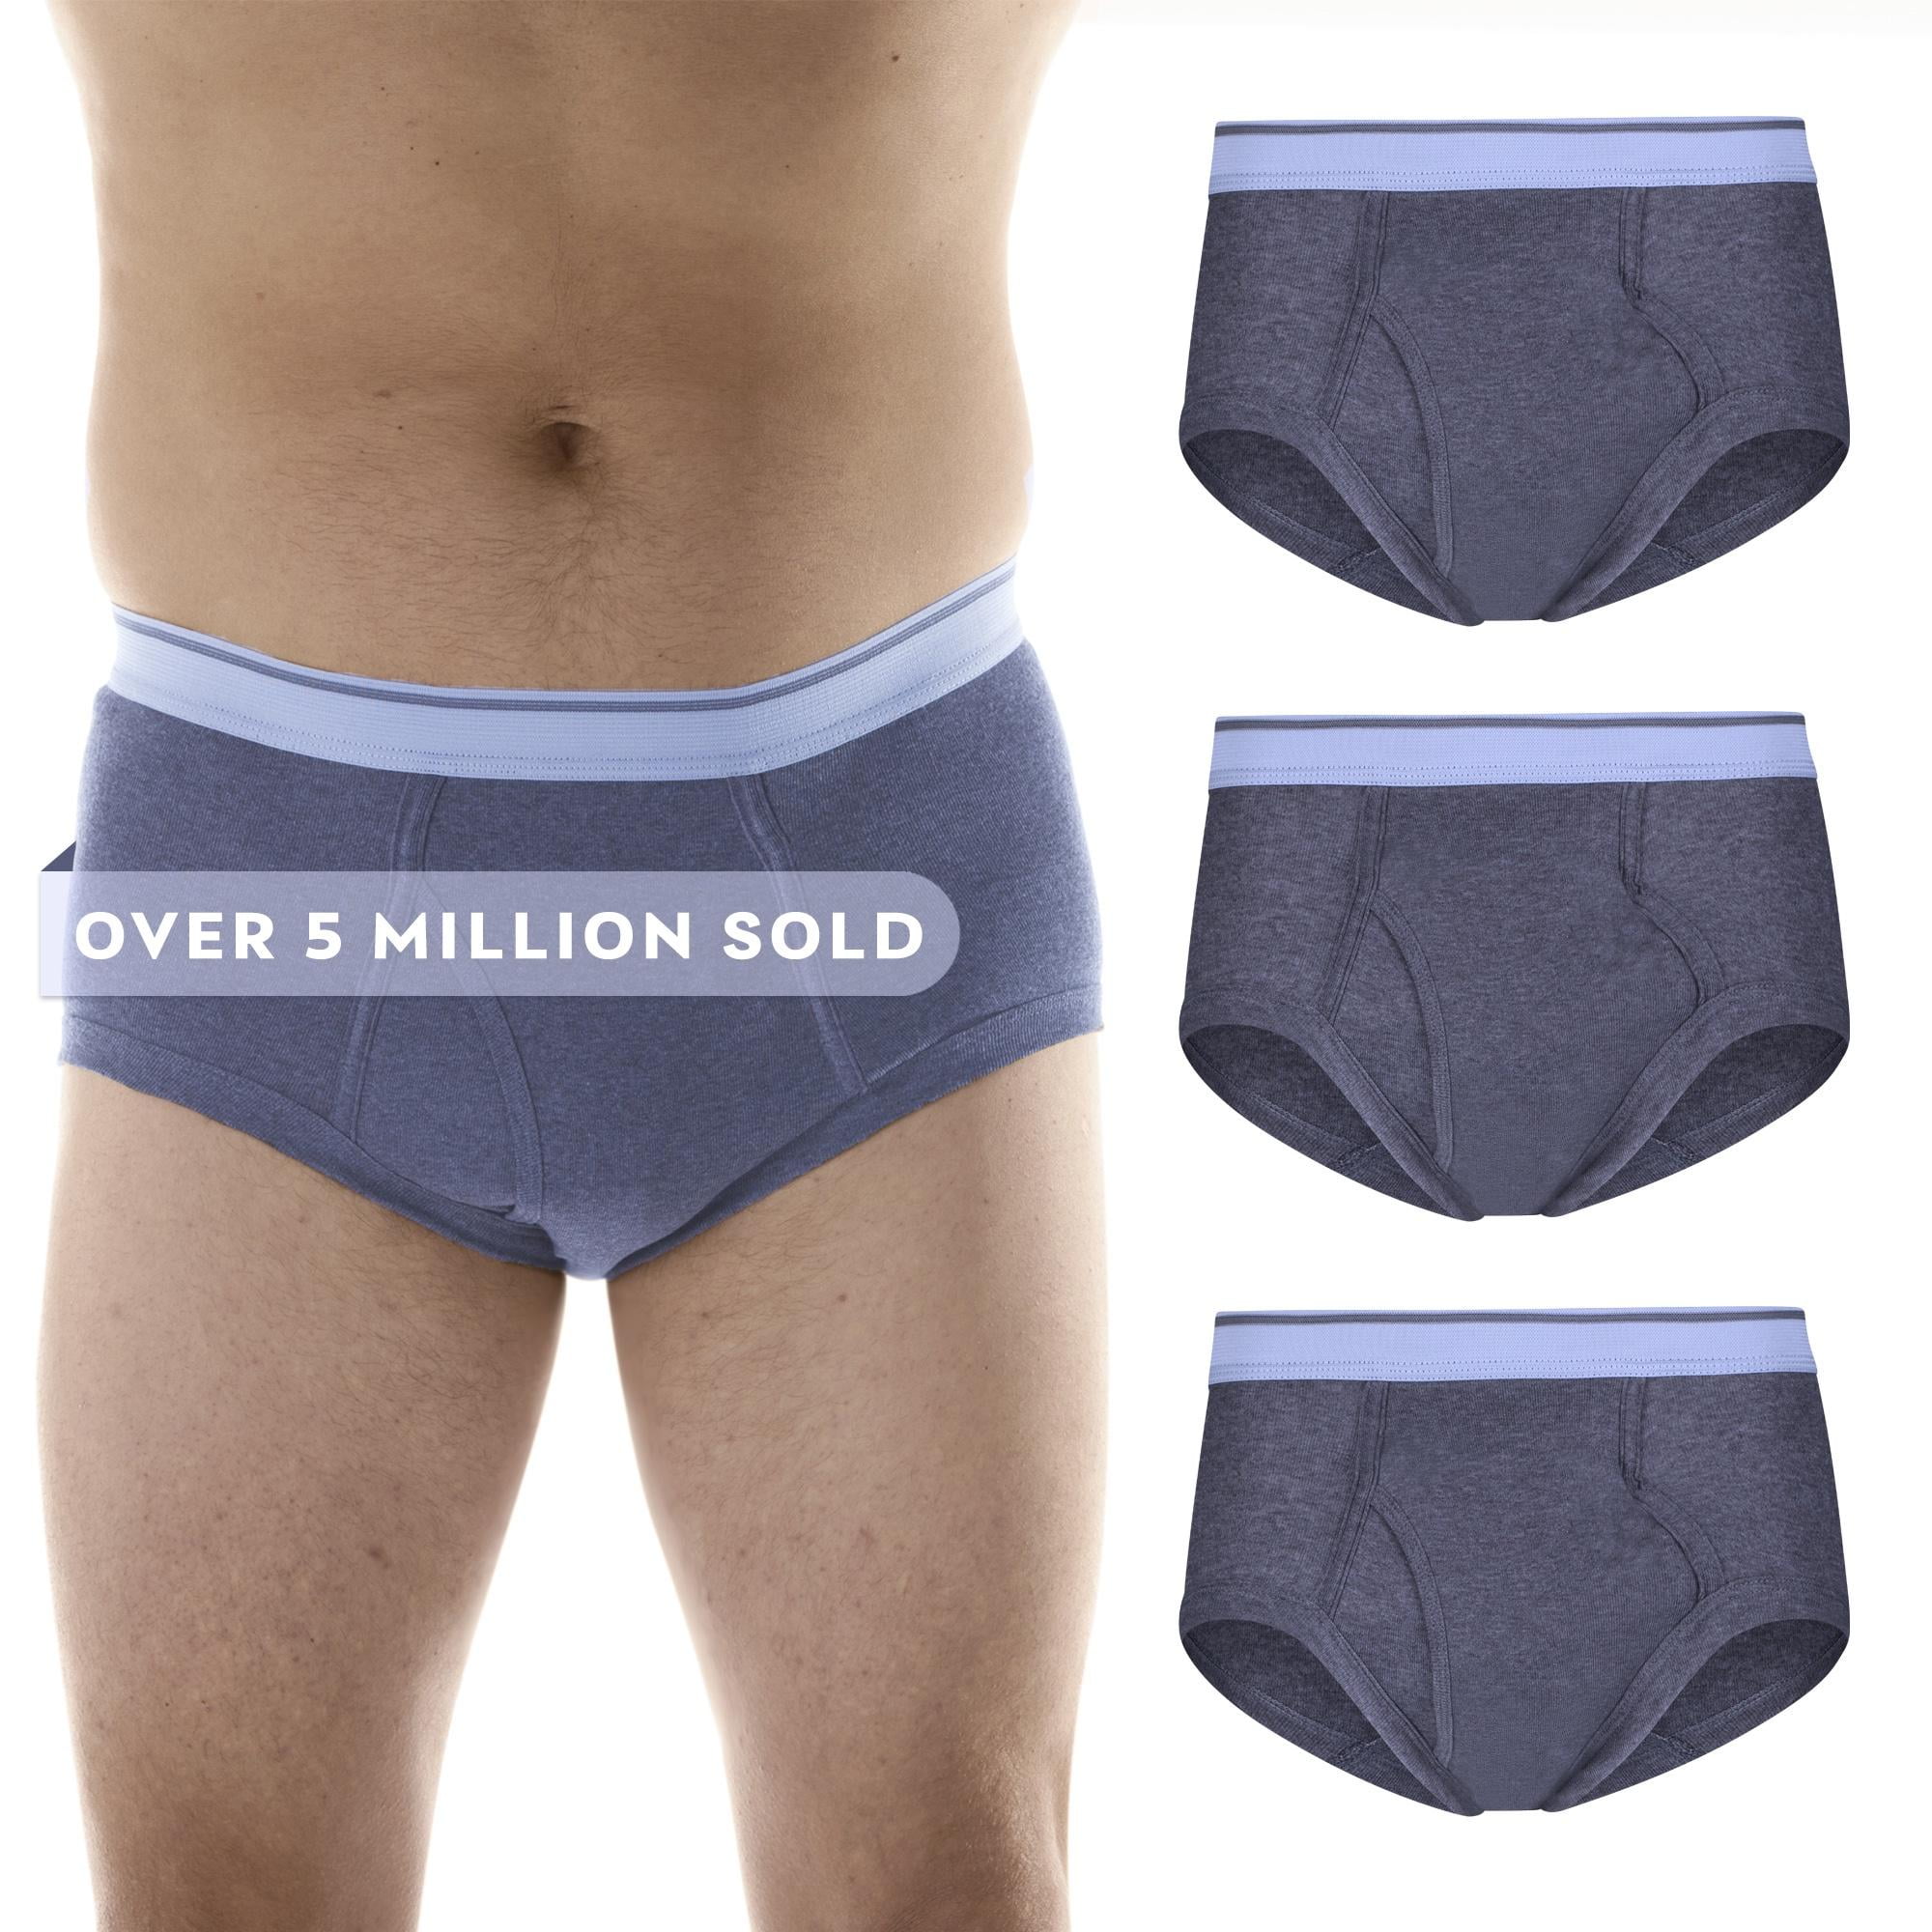  Wearever: Men's Maximum Absorbency Underwear